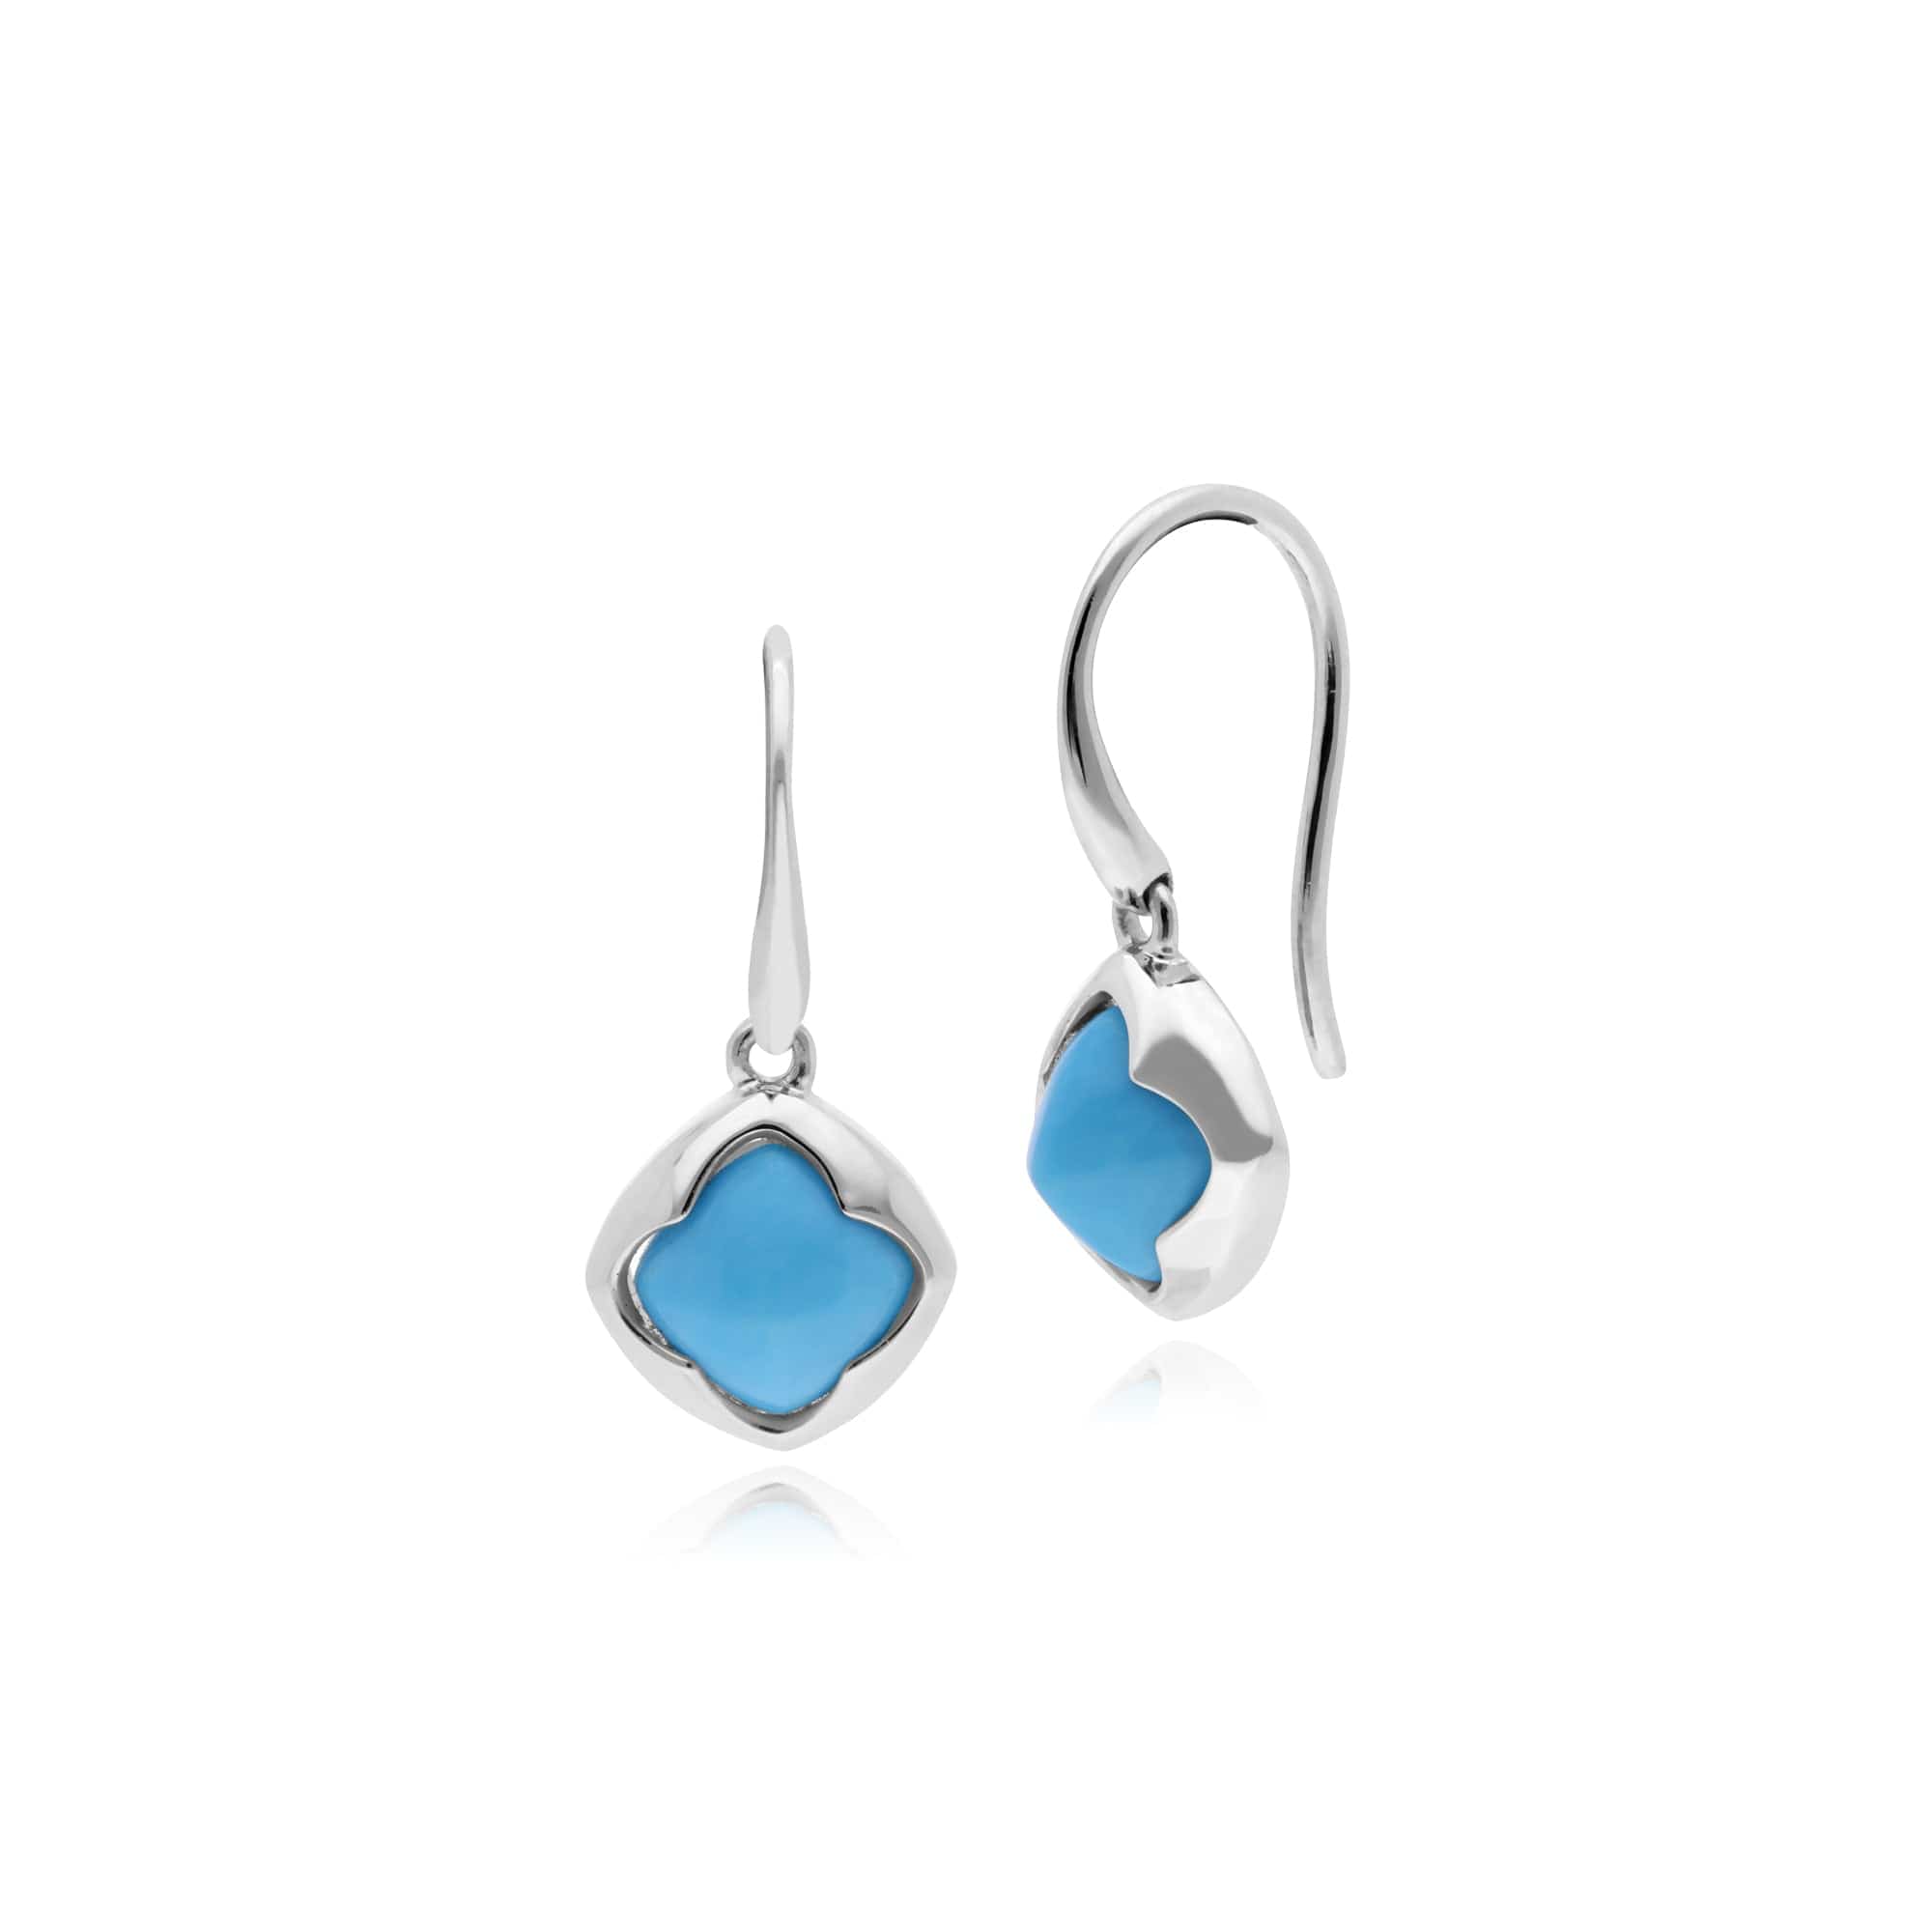 Geometric Sugarloaf Turquoise Circular Prism Drop Earrings in 925 Sterling Silver - Gemondo